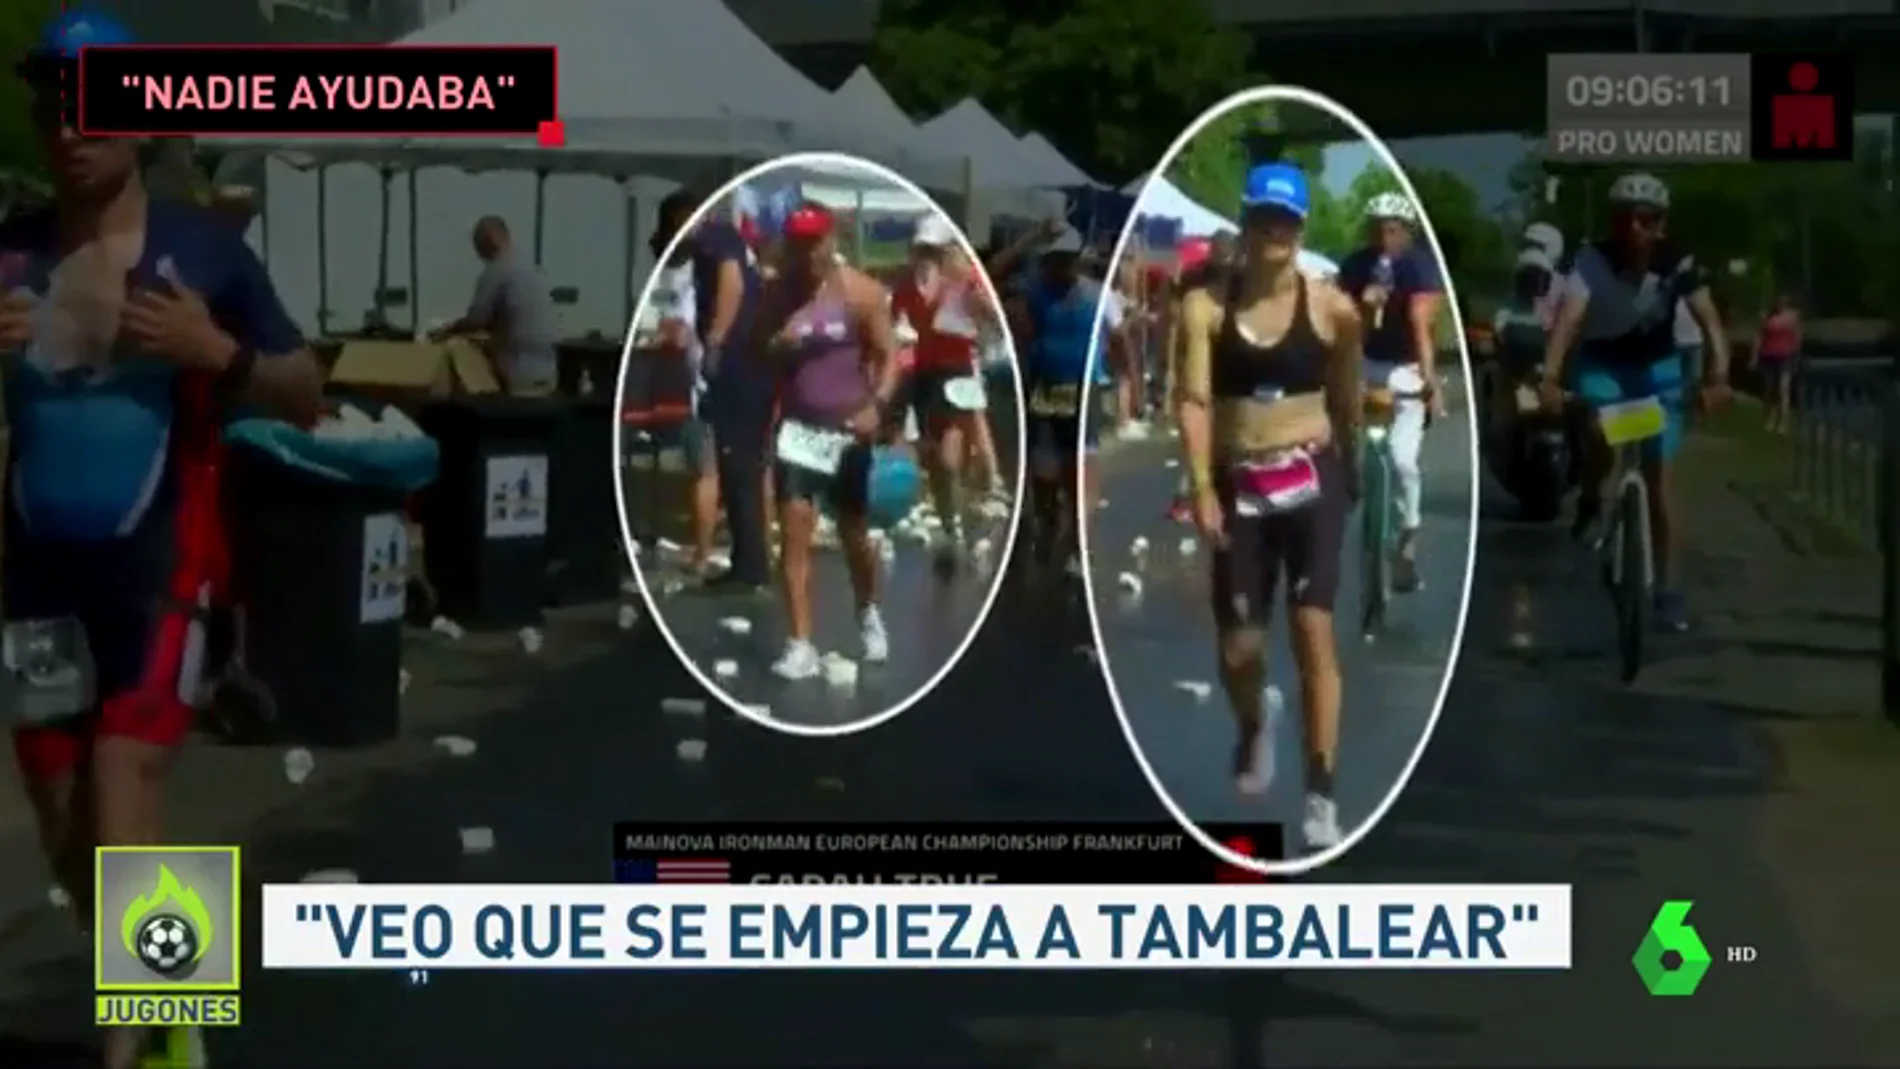 El triatleta español que ayudó a Sarah True en el Ironman de Frankfurt: "Veo a una chica que empieza a tambalearse..."